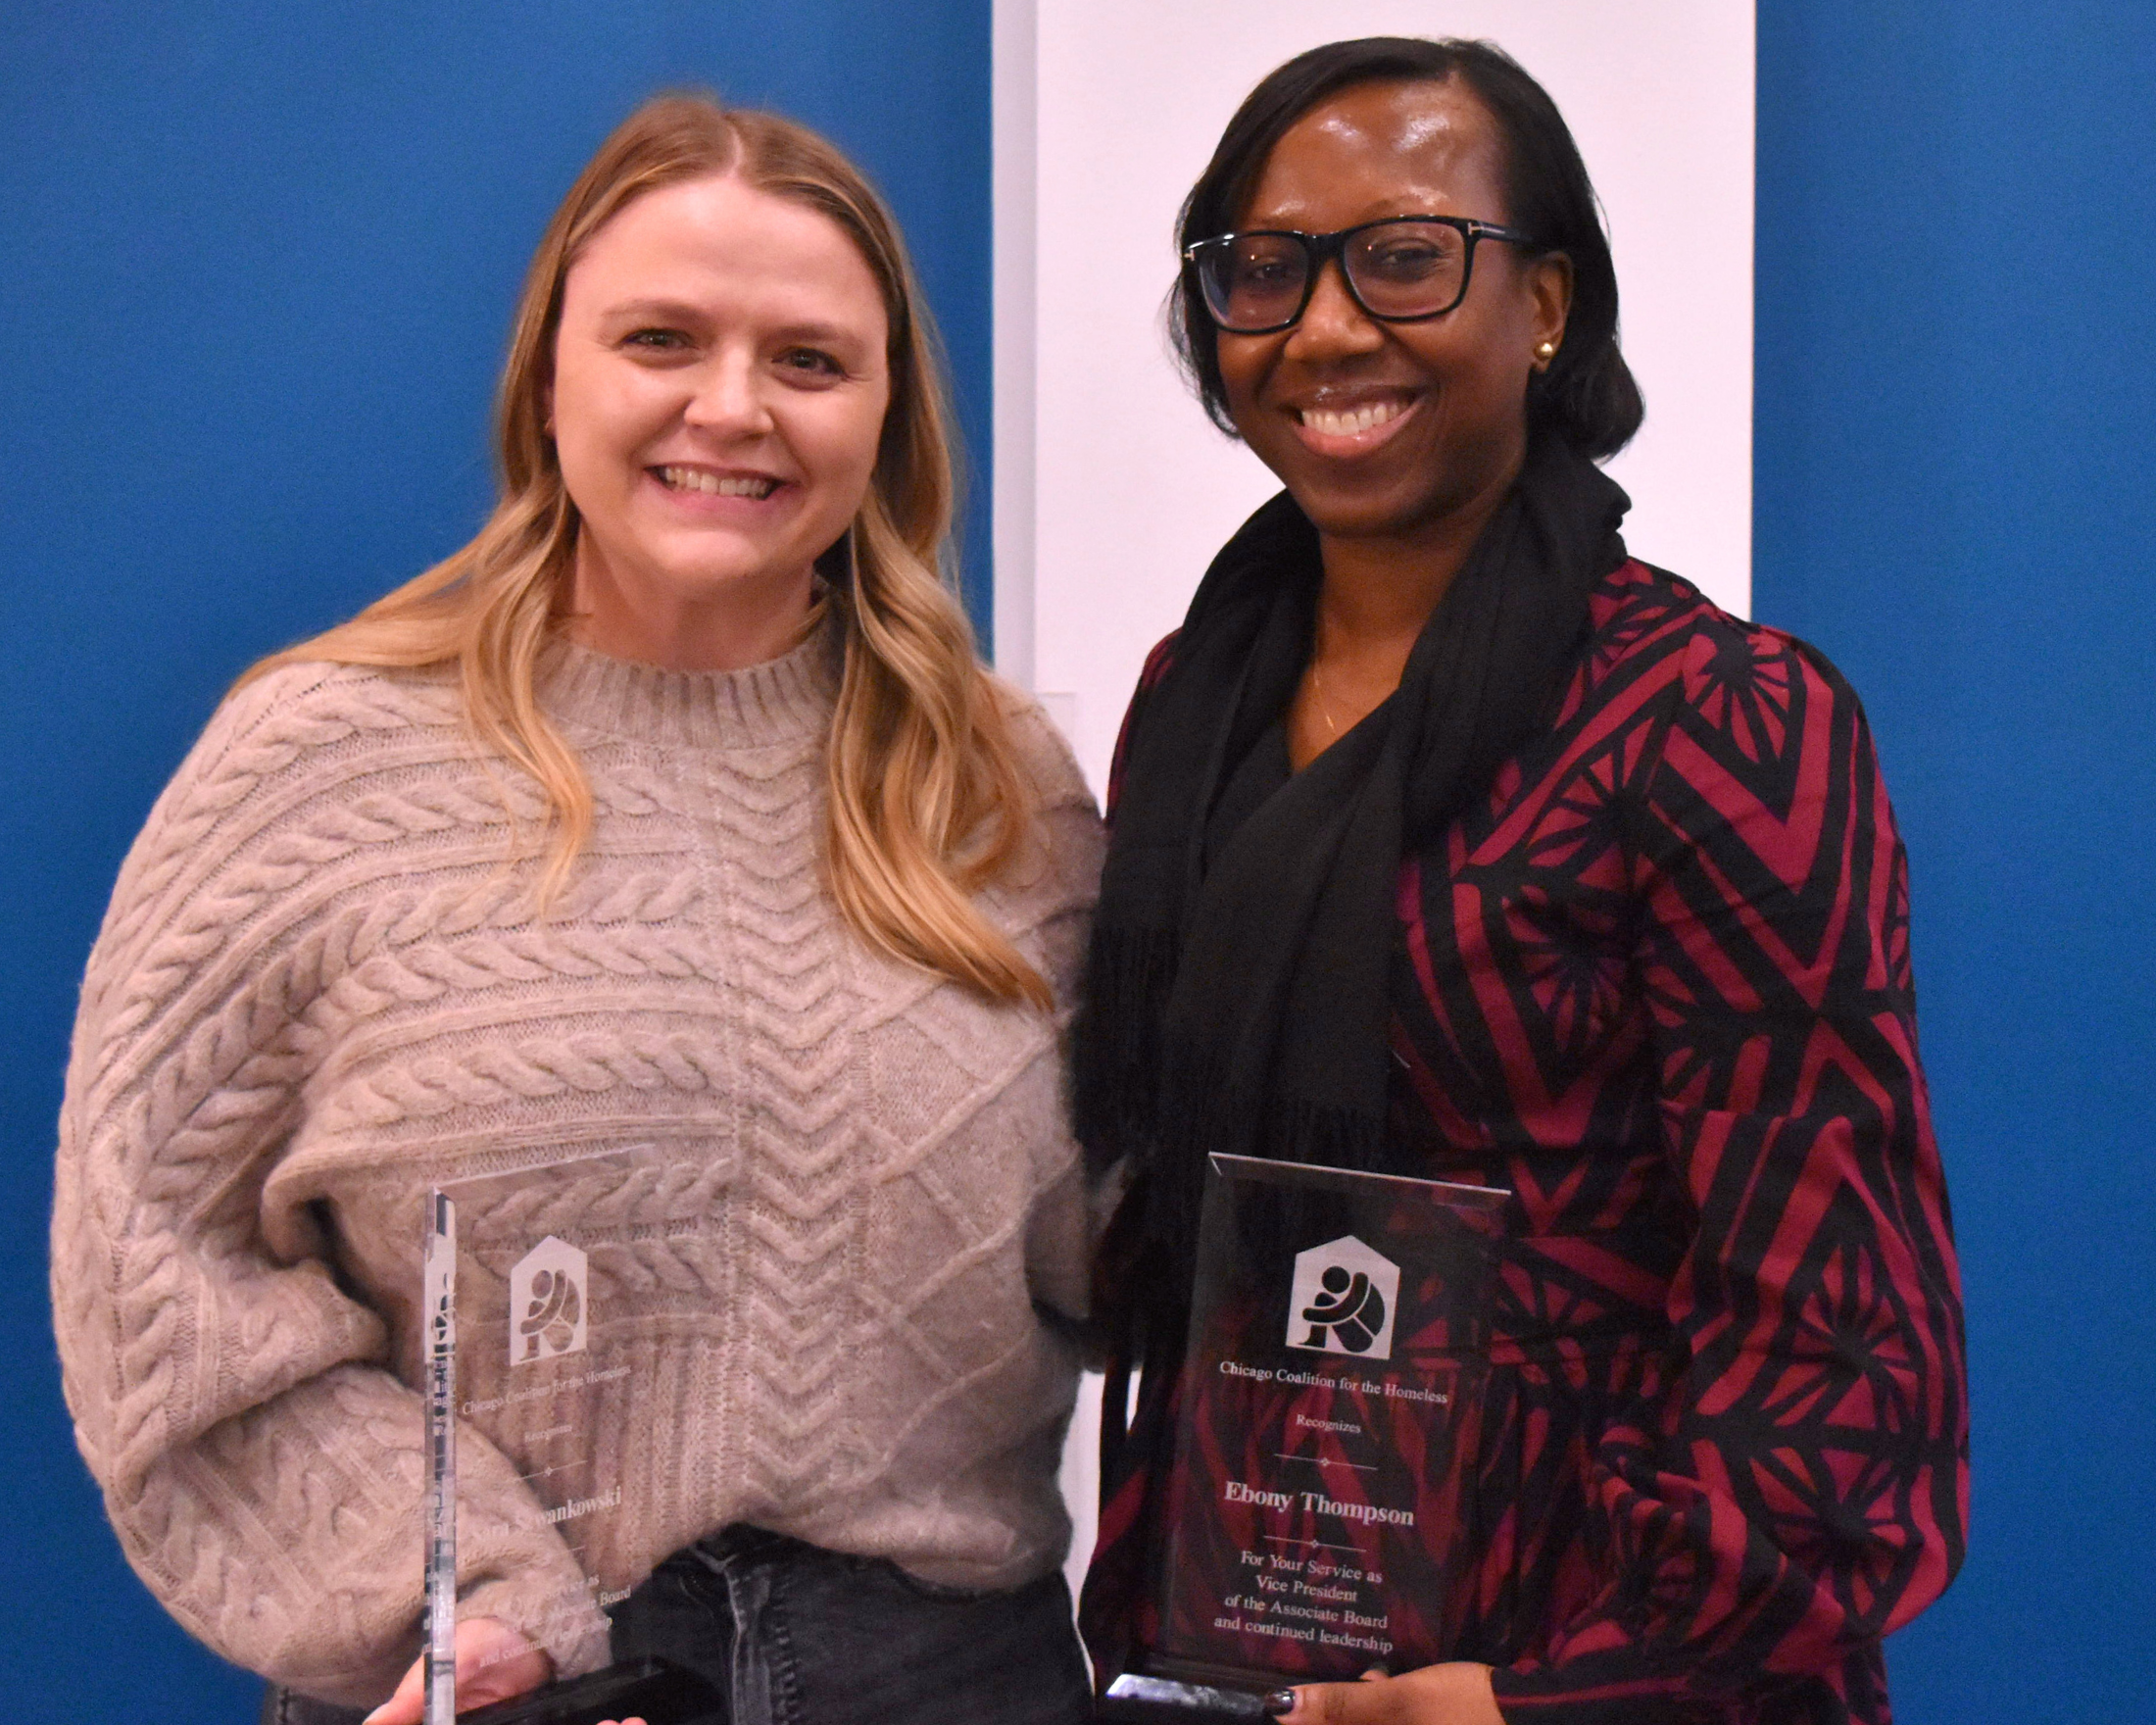 Sara Szwankowski & Ebony Thompson smile while holding their awards.